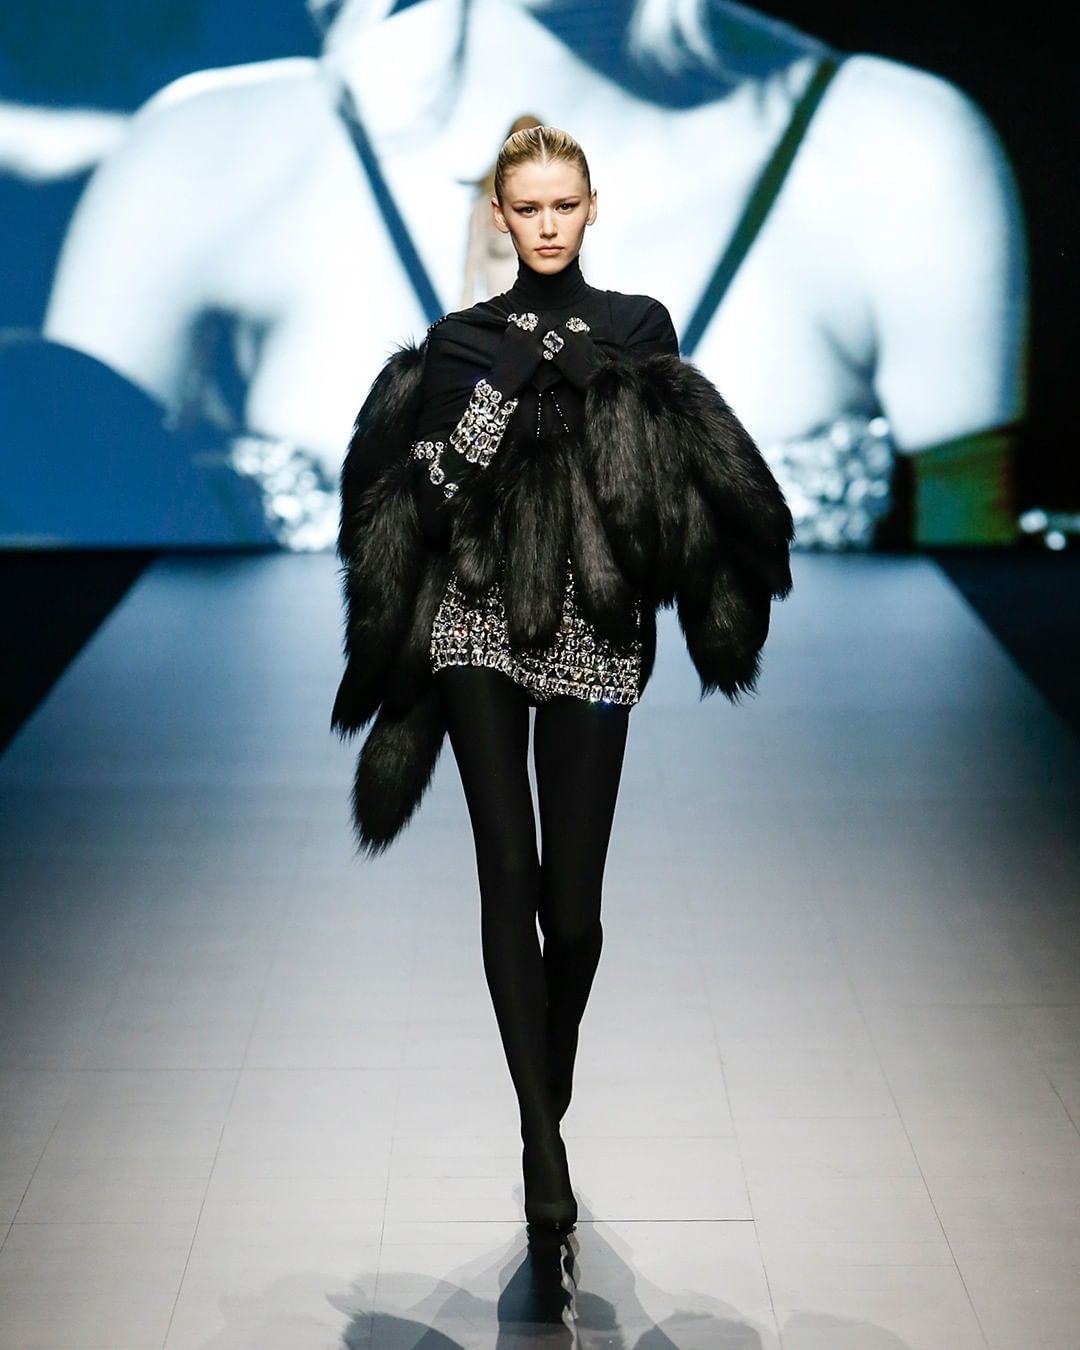 Look de coulotte con bordados y leggings, de Dolce & Gabbana.